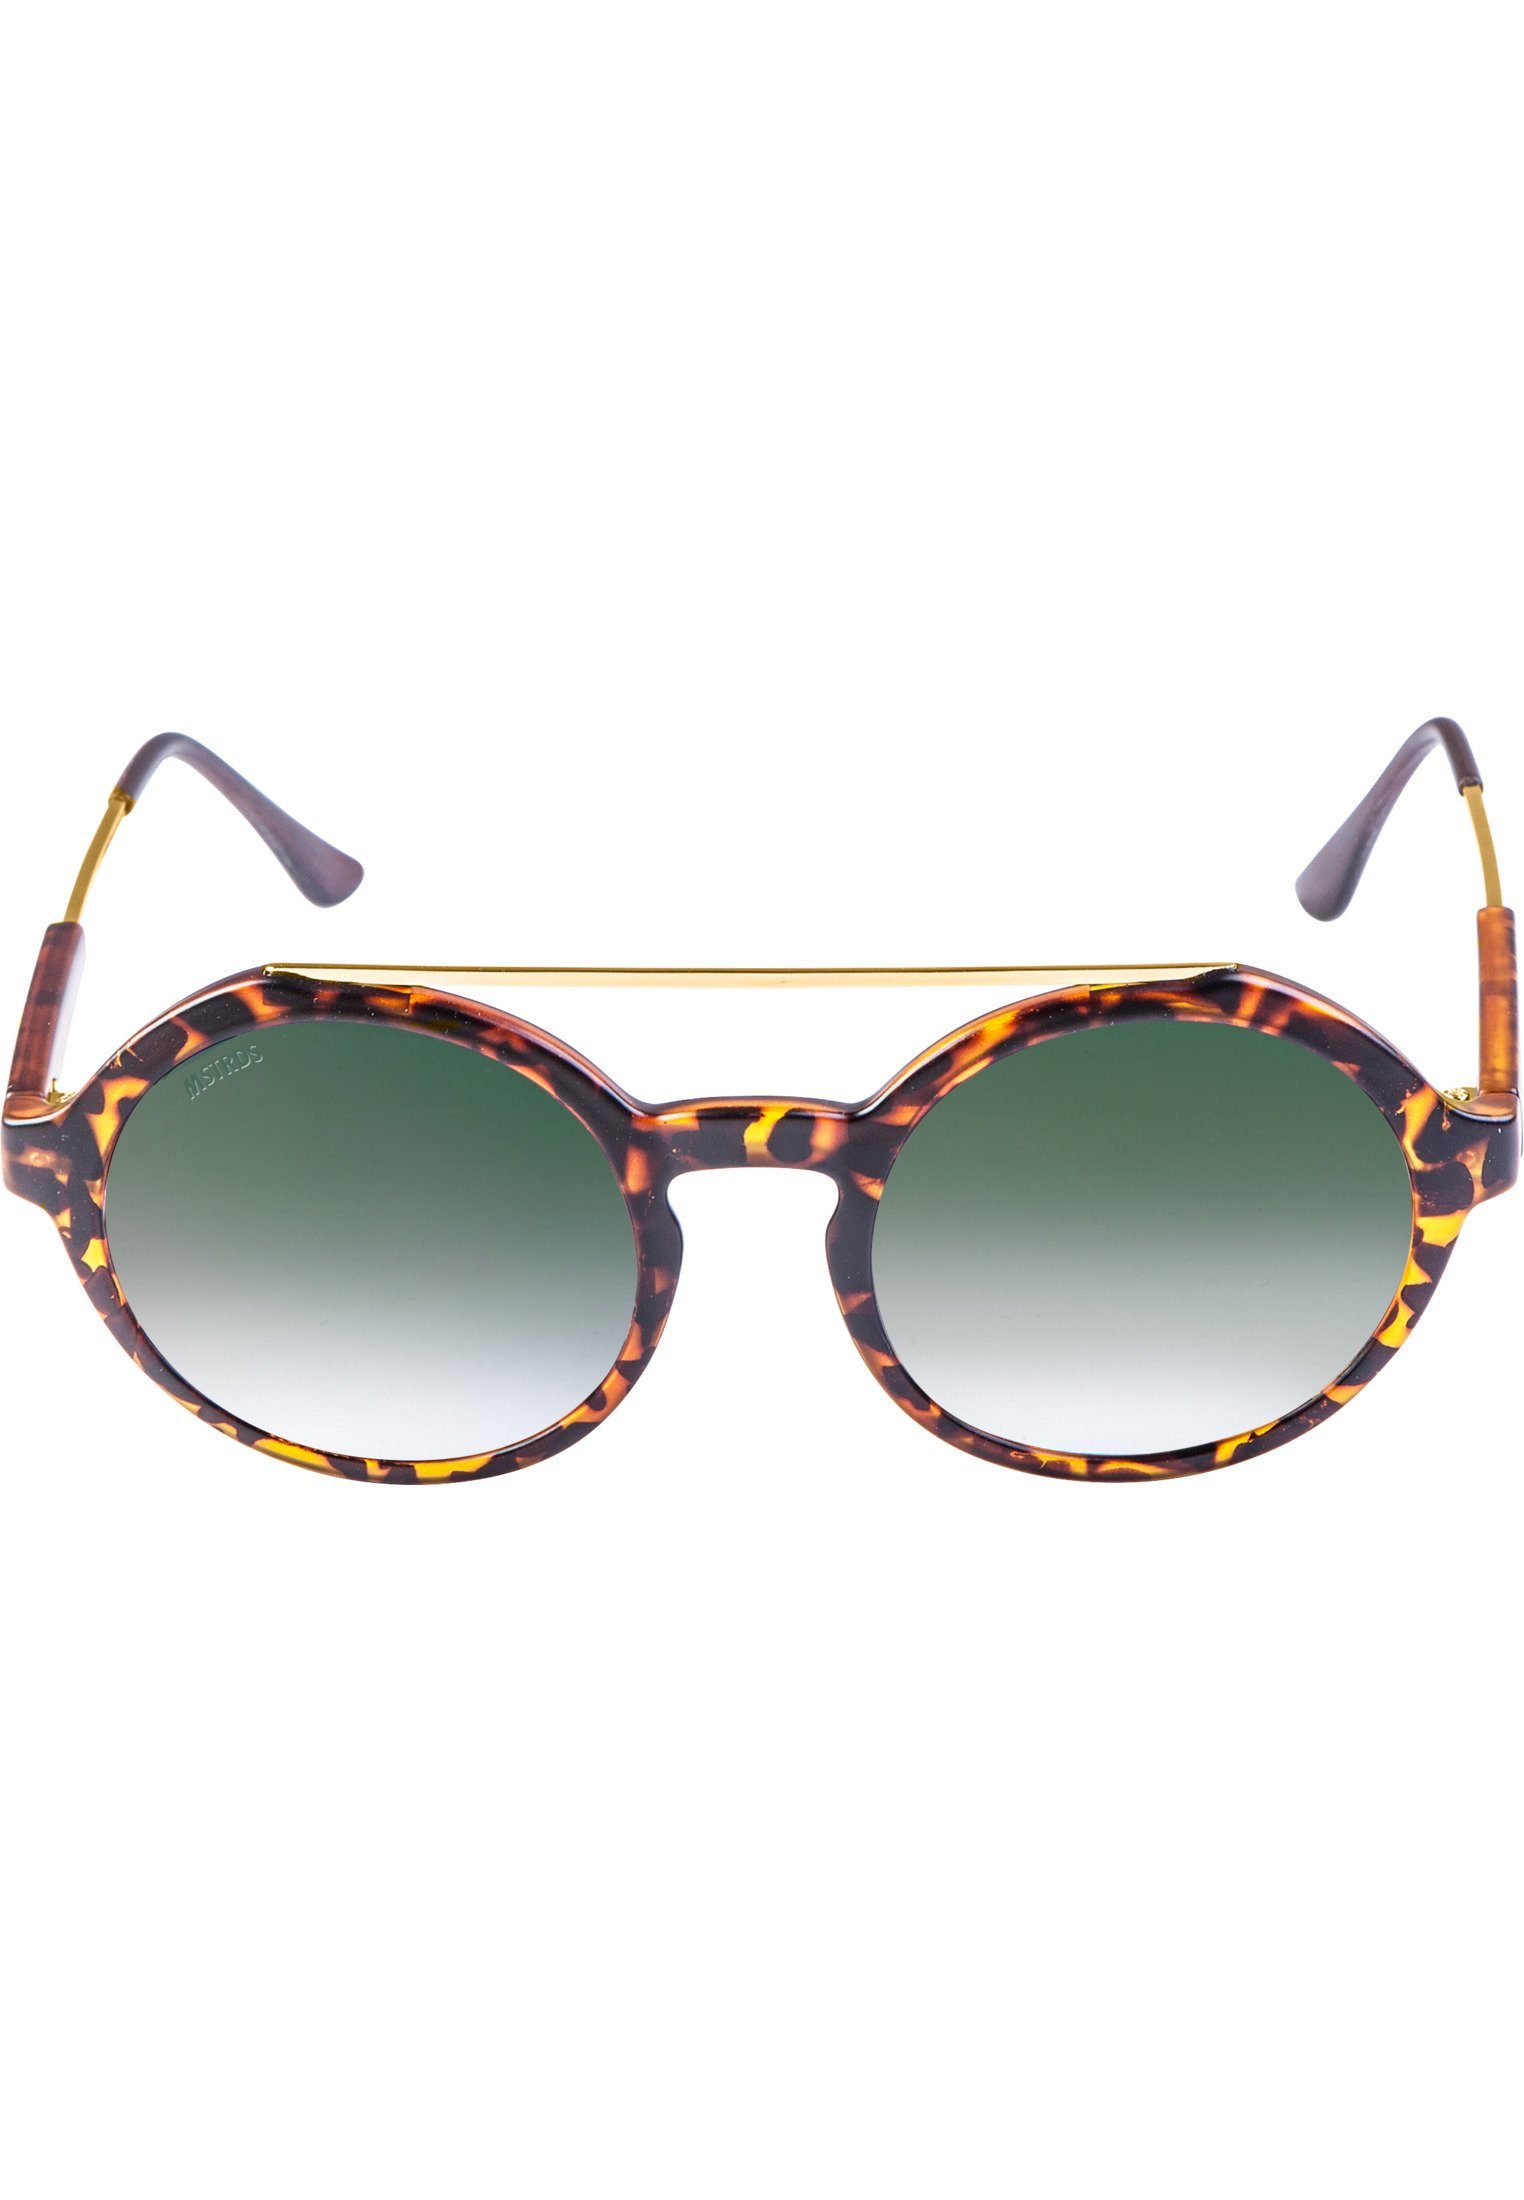 Space Sunglasses Retro MSTRDS havanna/green Sonnenbrille Accessoires